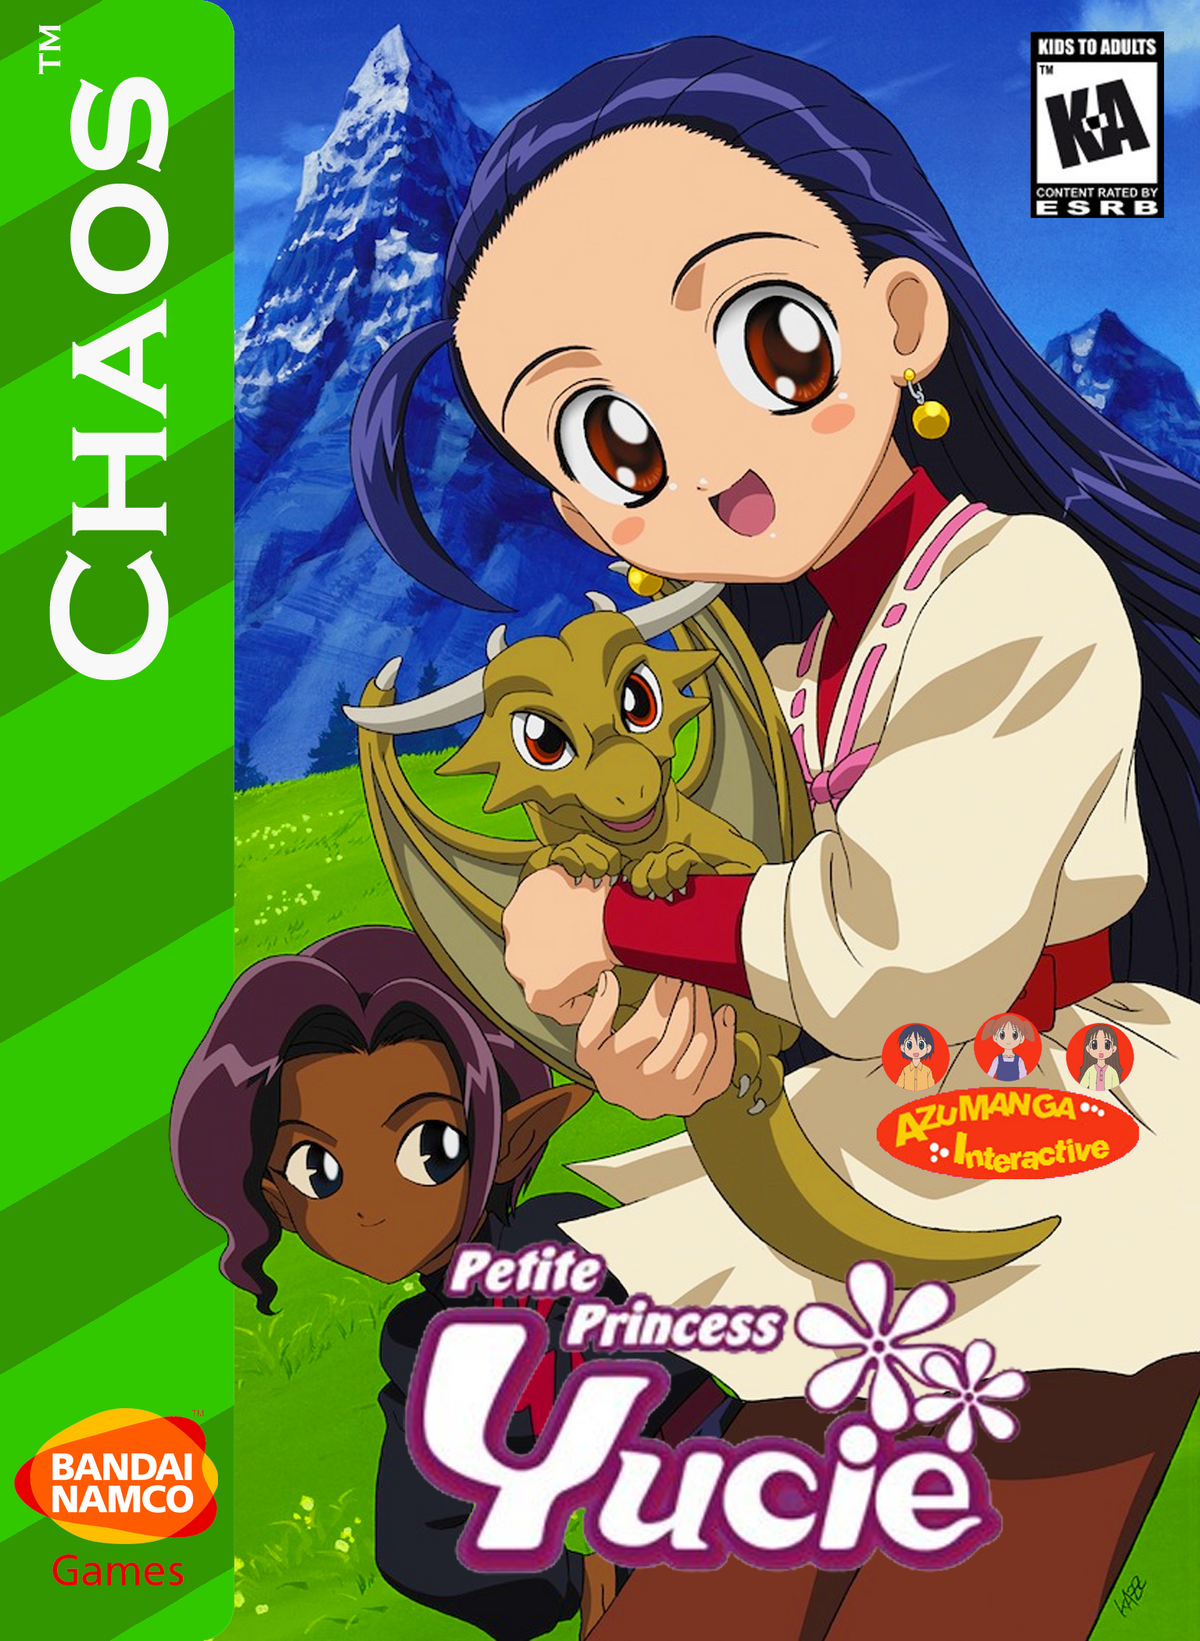 Petite Princess Yucie (Video Game) | Video Games Fanon Wiki | Fandom